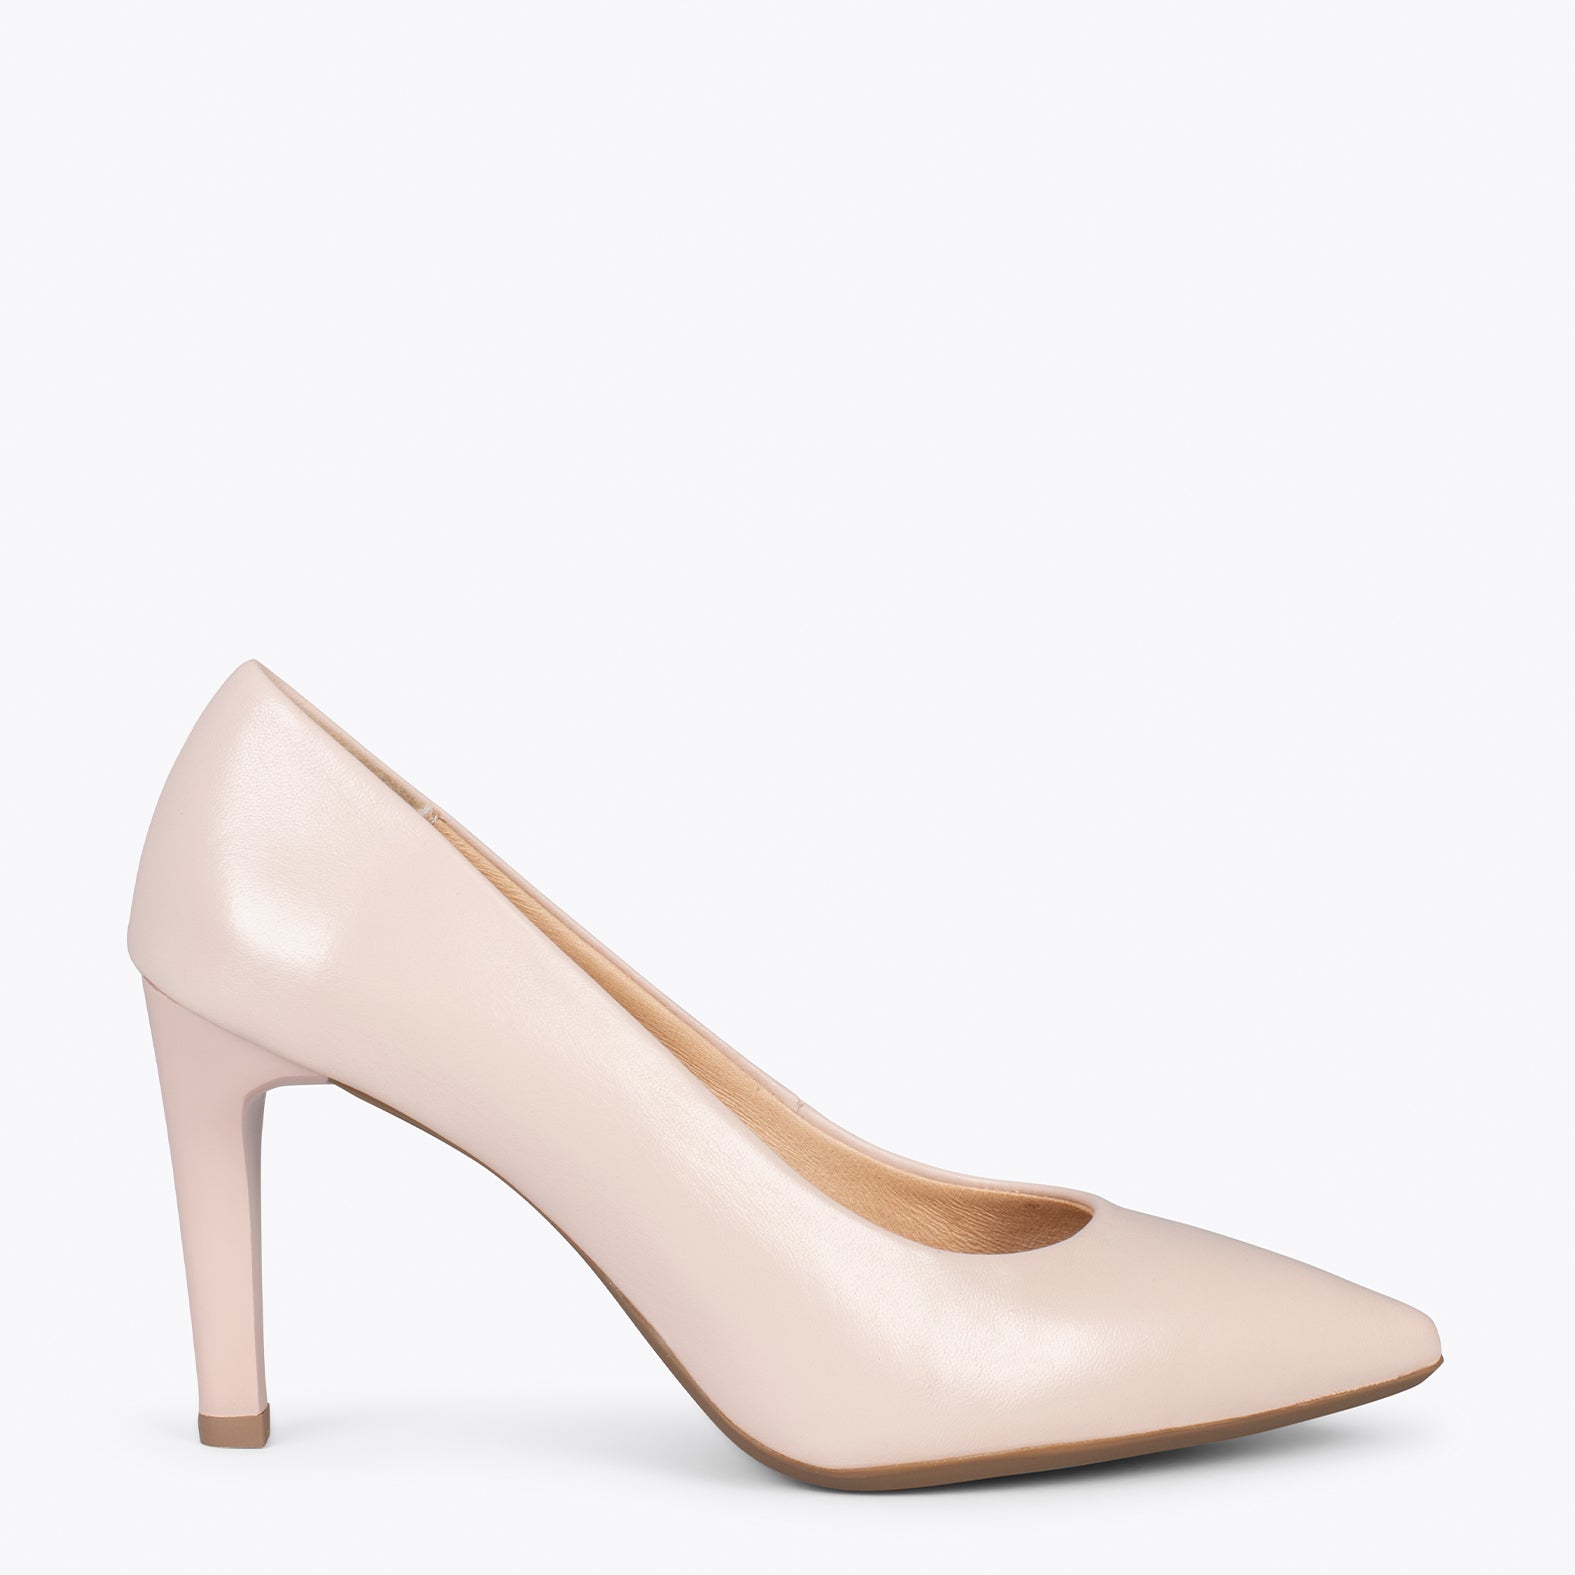 GLAM – NUDE elegant high heels